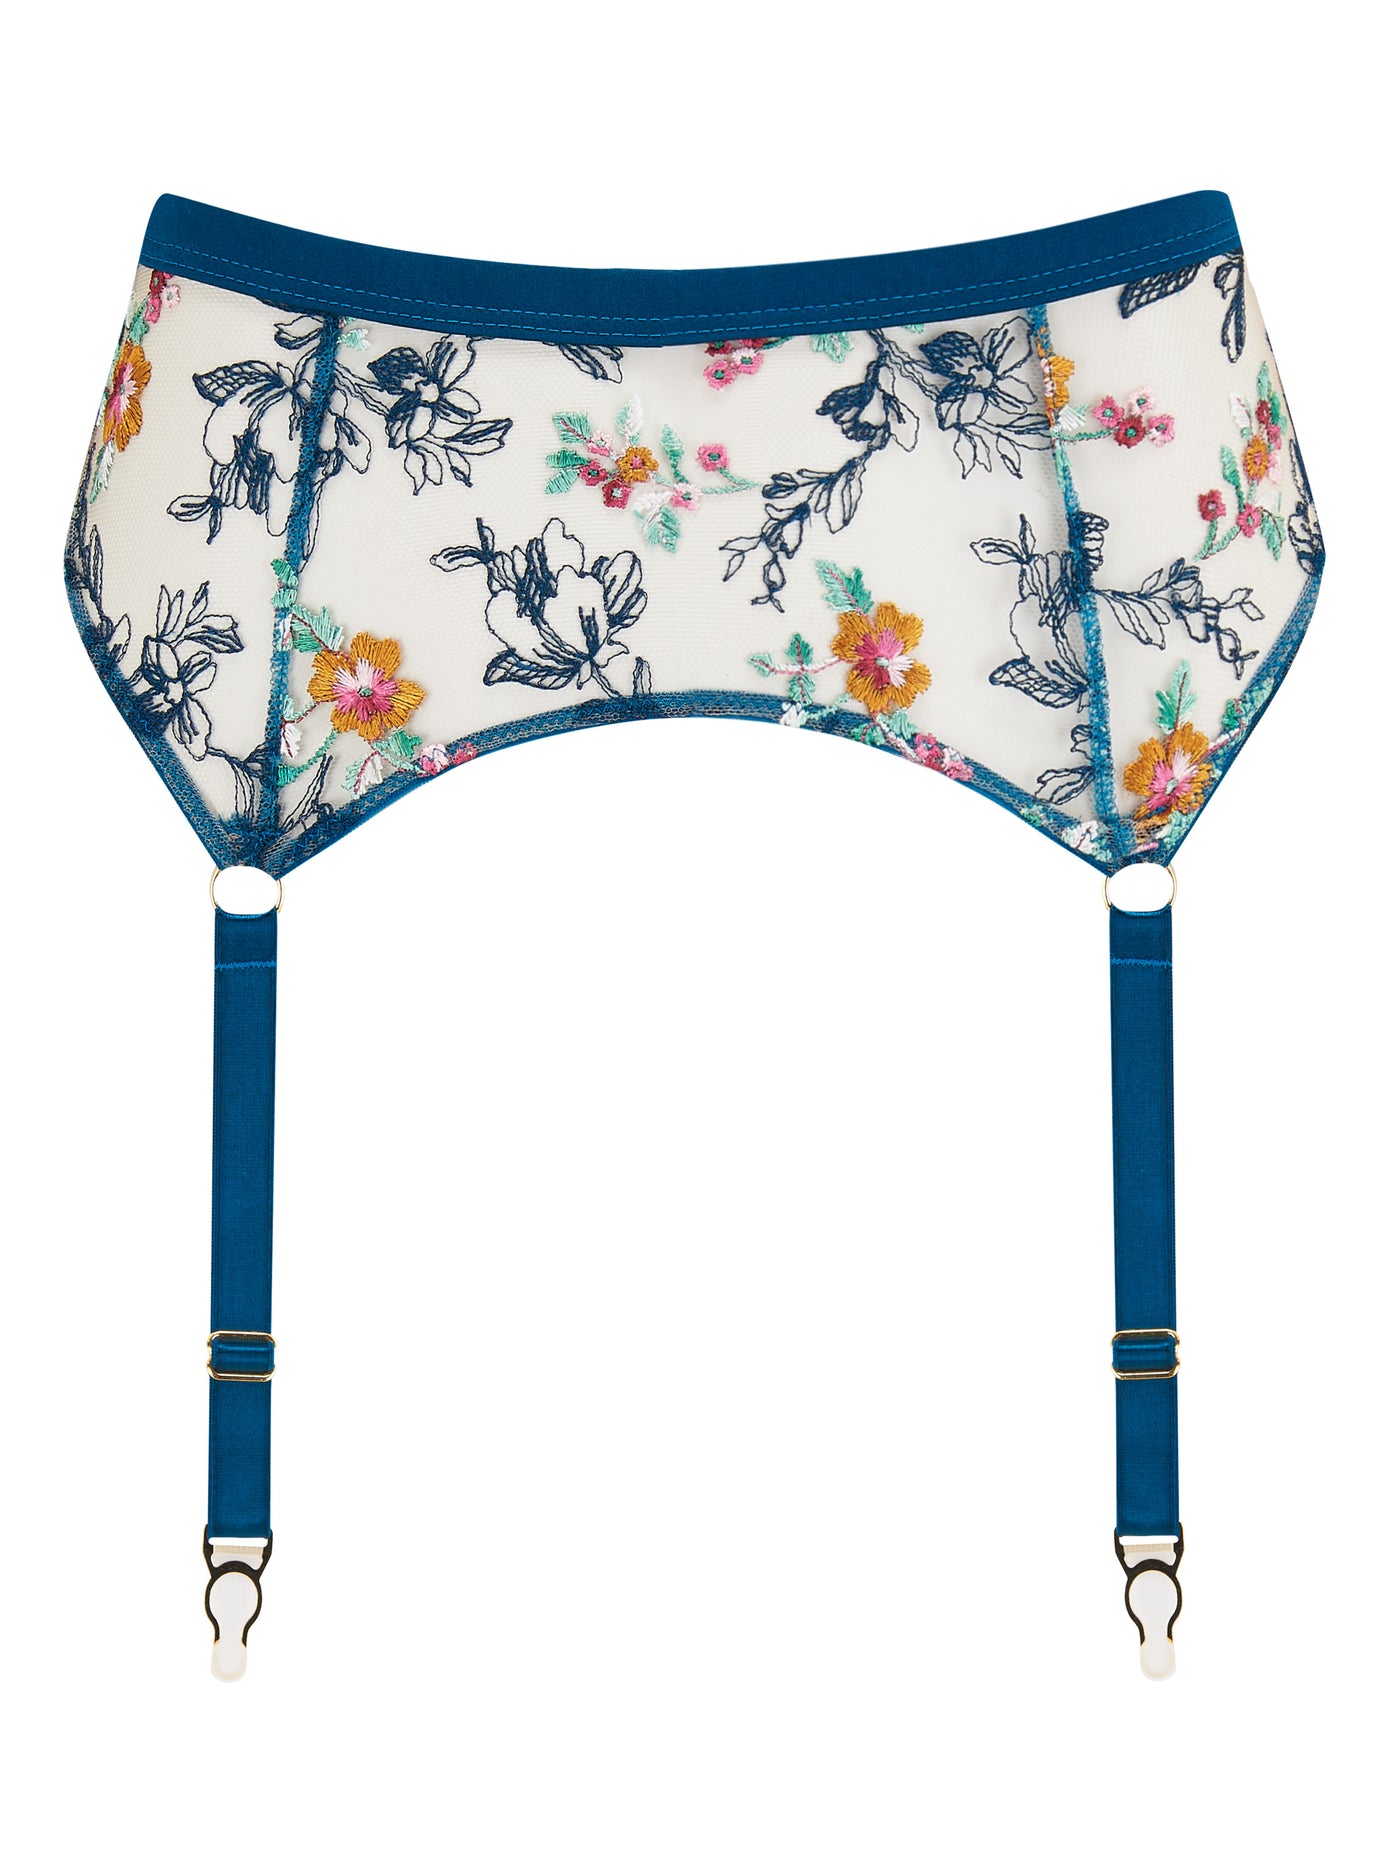 Evelyn cyan floral embroidered suspender belt